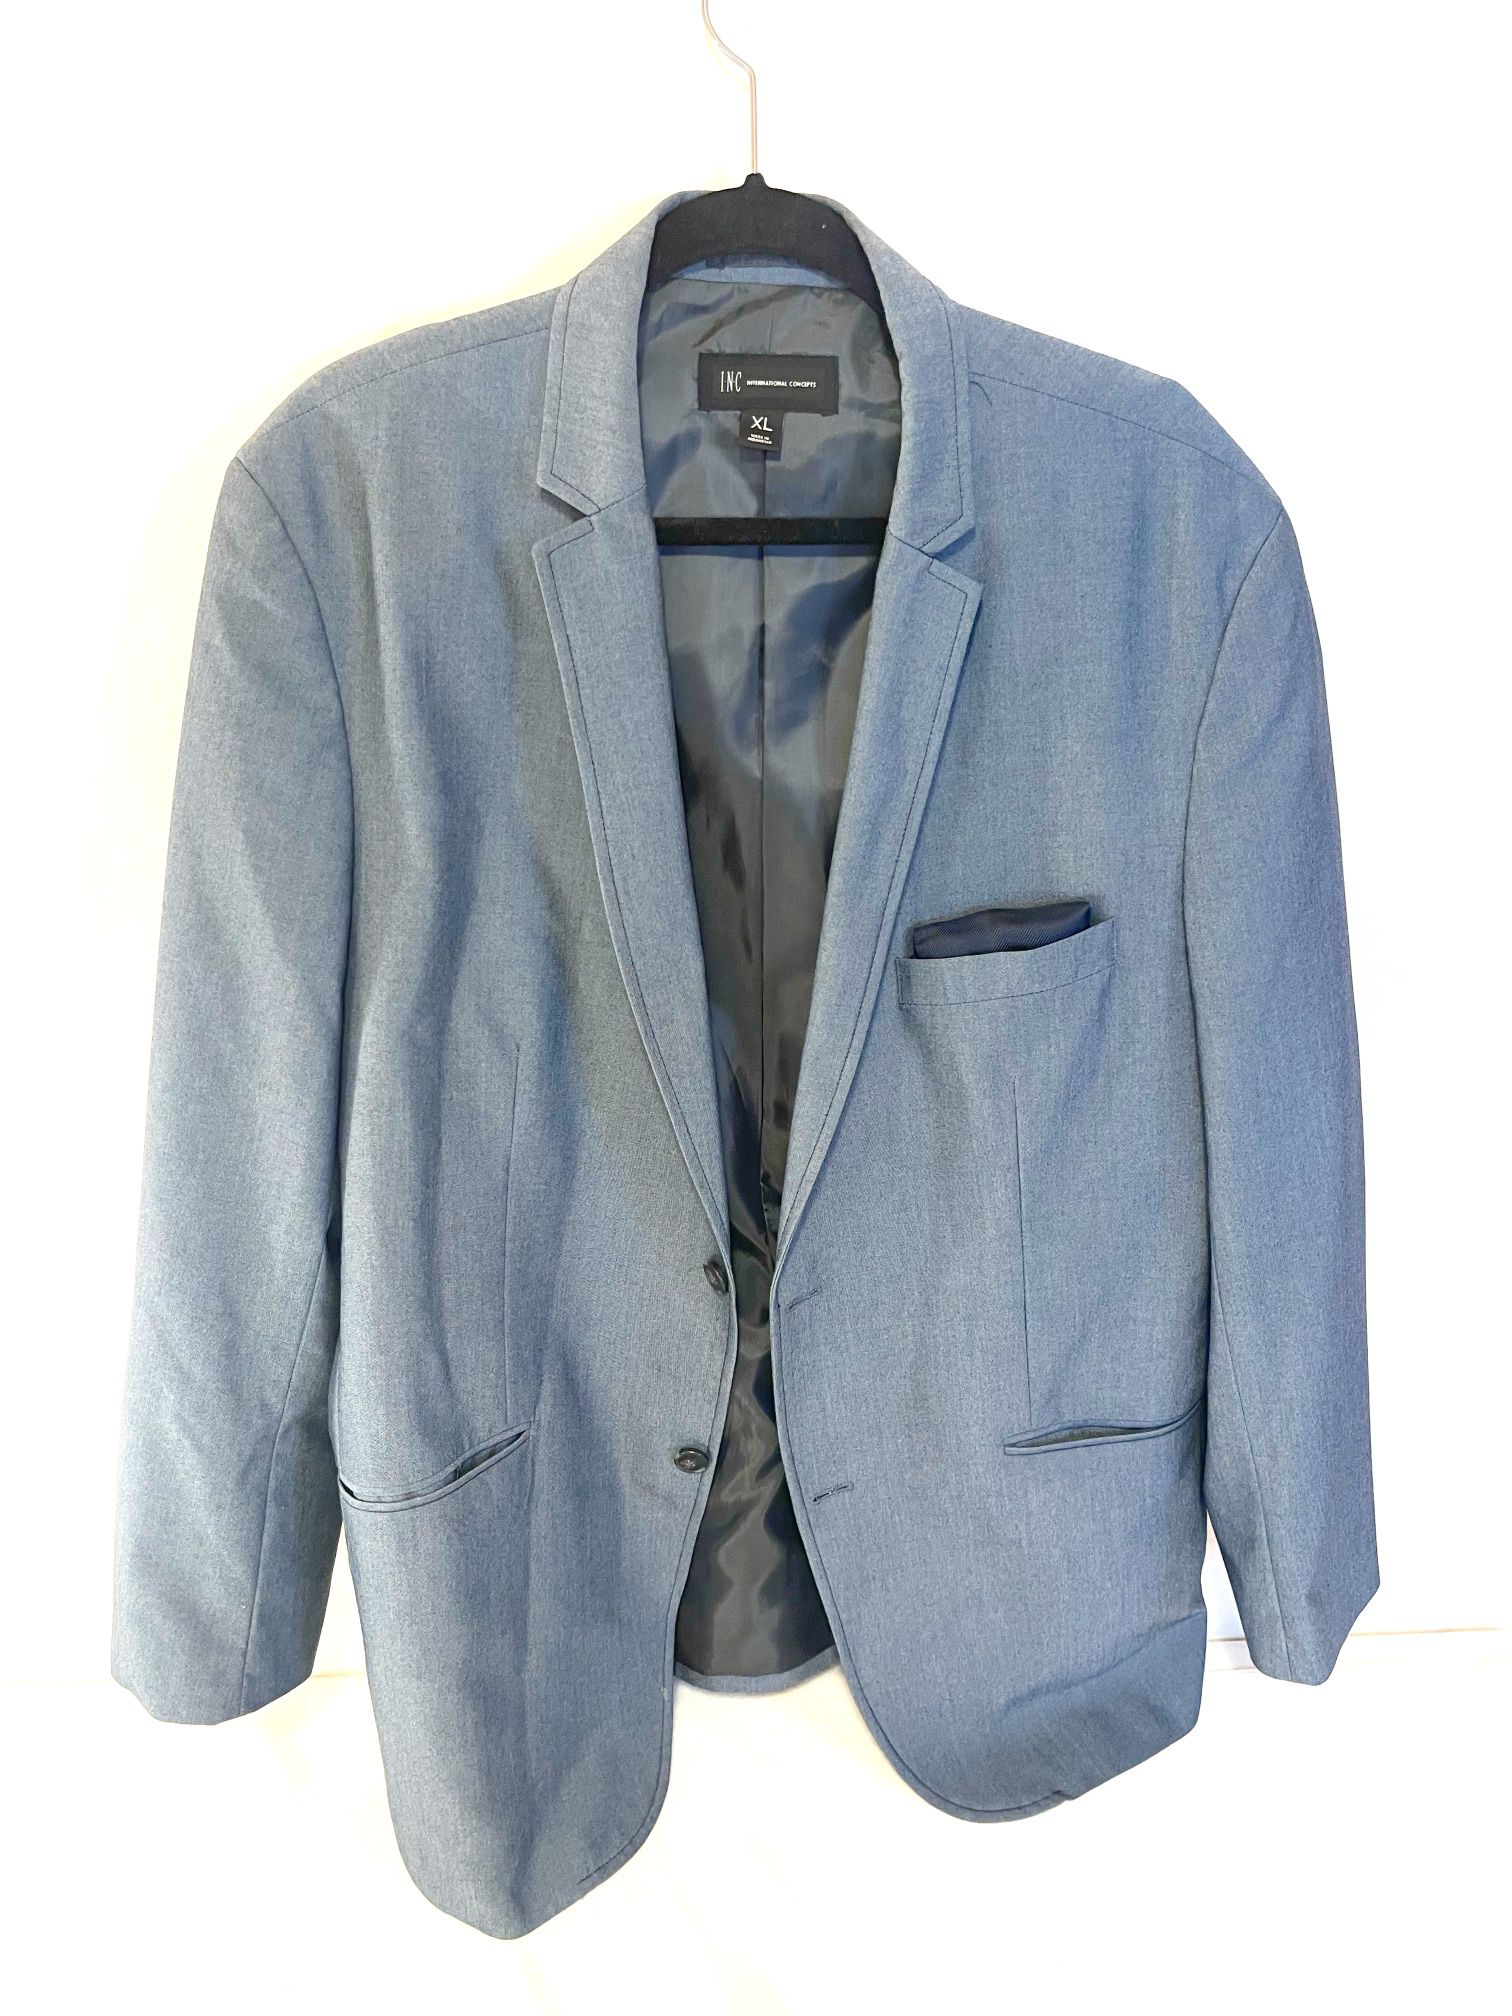 INC International Concepts Men's Blue  Classy Blazer/ Suit Jacket Size XL